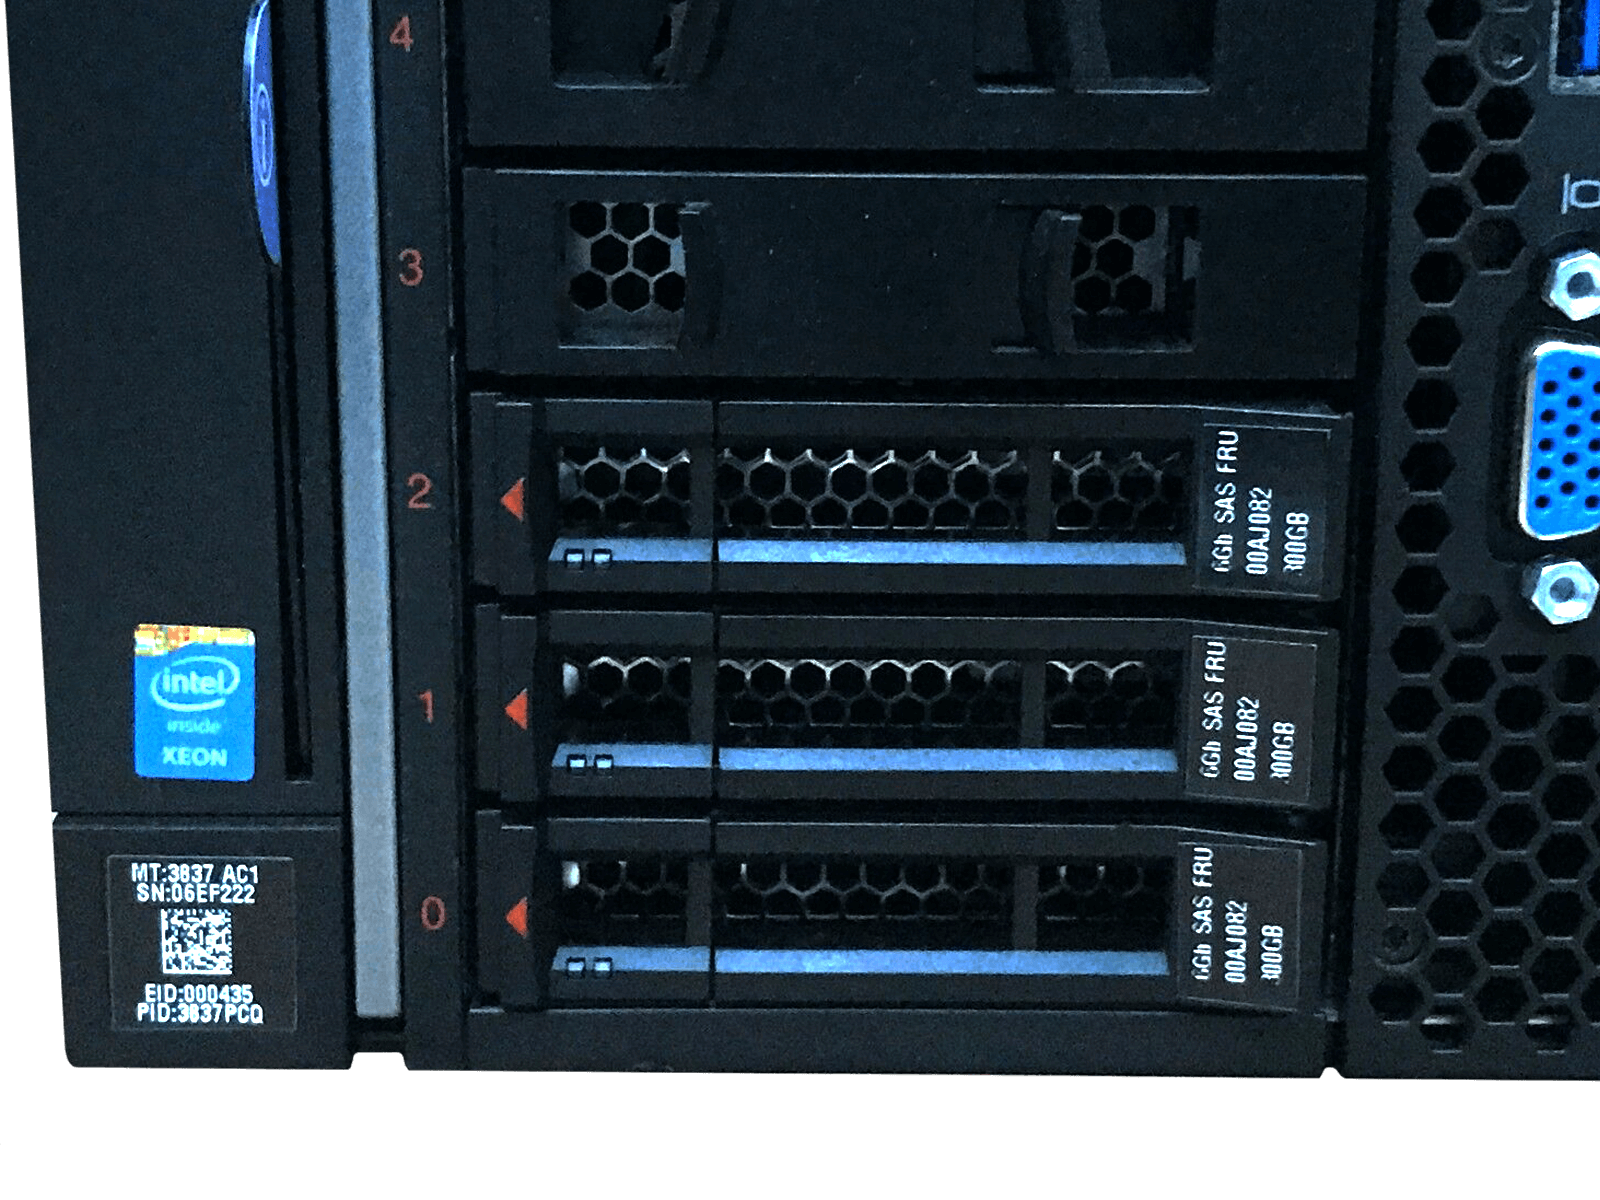 IBM x3850 X6 Server 4x Xeon E7-4820 v2 1024GB DDR3 RAM 2x 300GB 10K 4x 1400W PSU